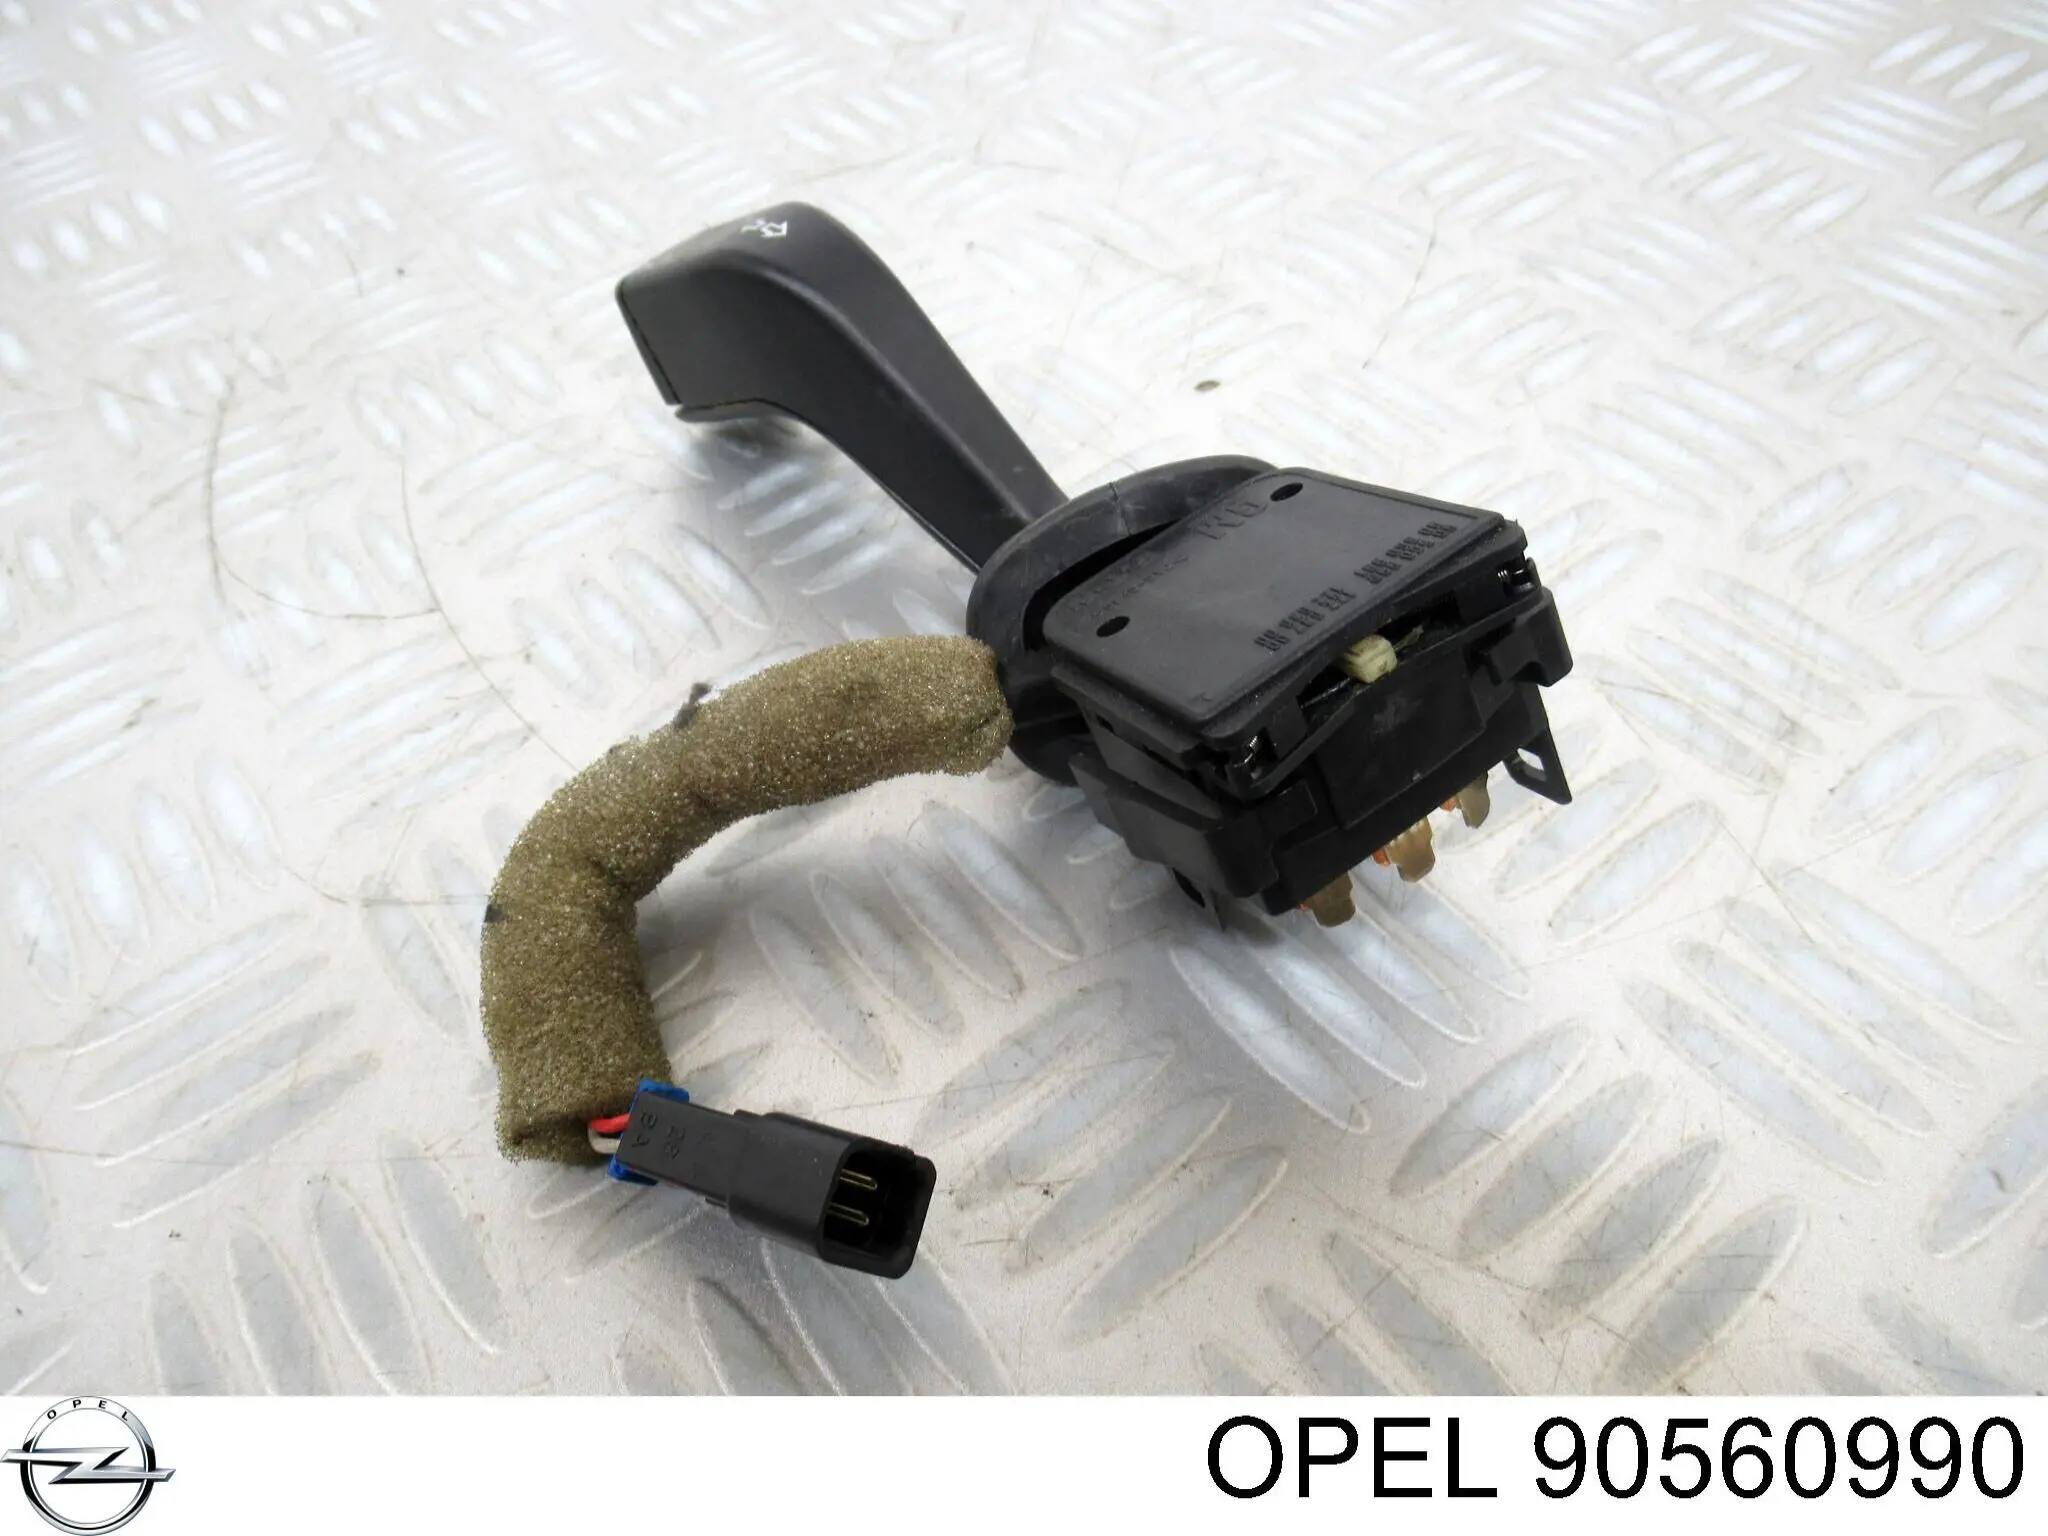 90560990 Opel conmutador en la columna de dirección izquierdo